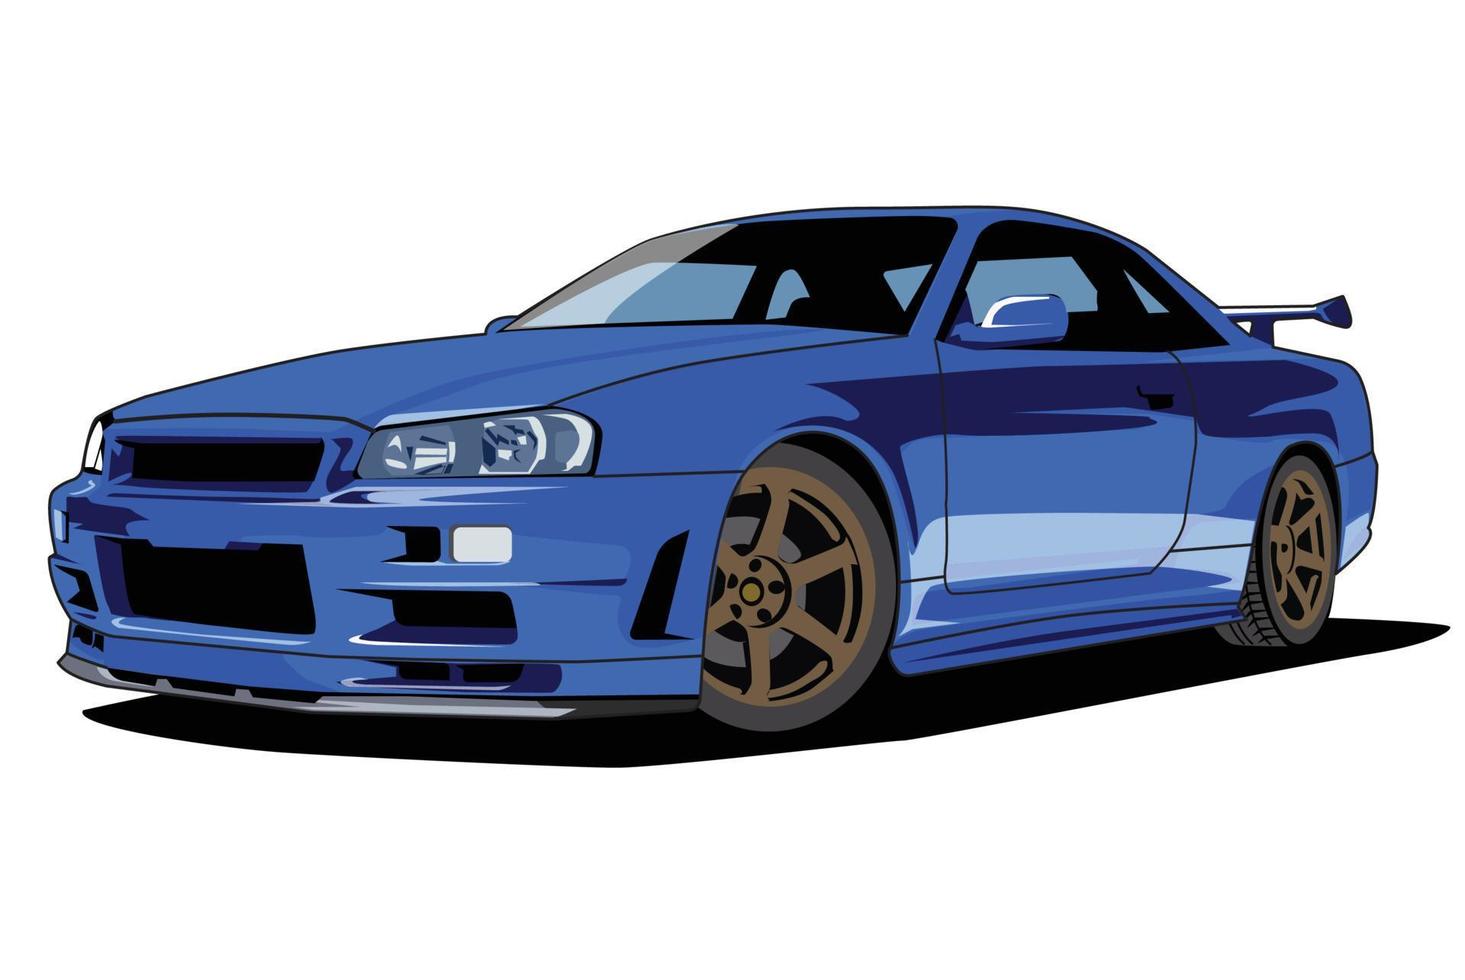 design de vetor de ilustração de carro de corrida azul 9931735